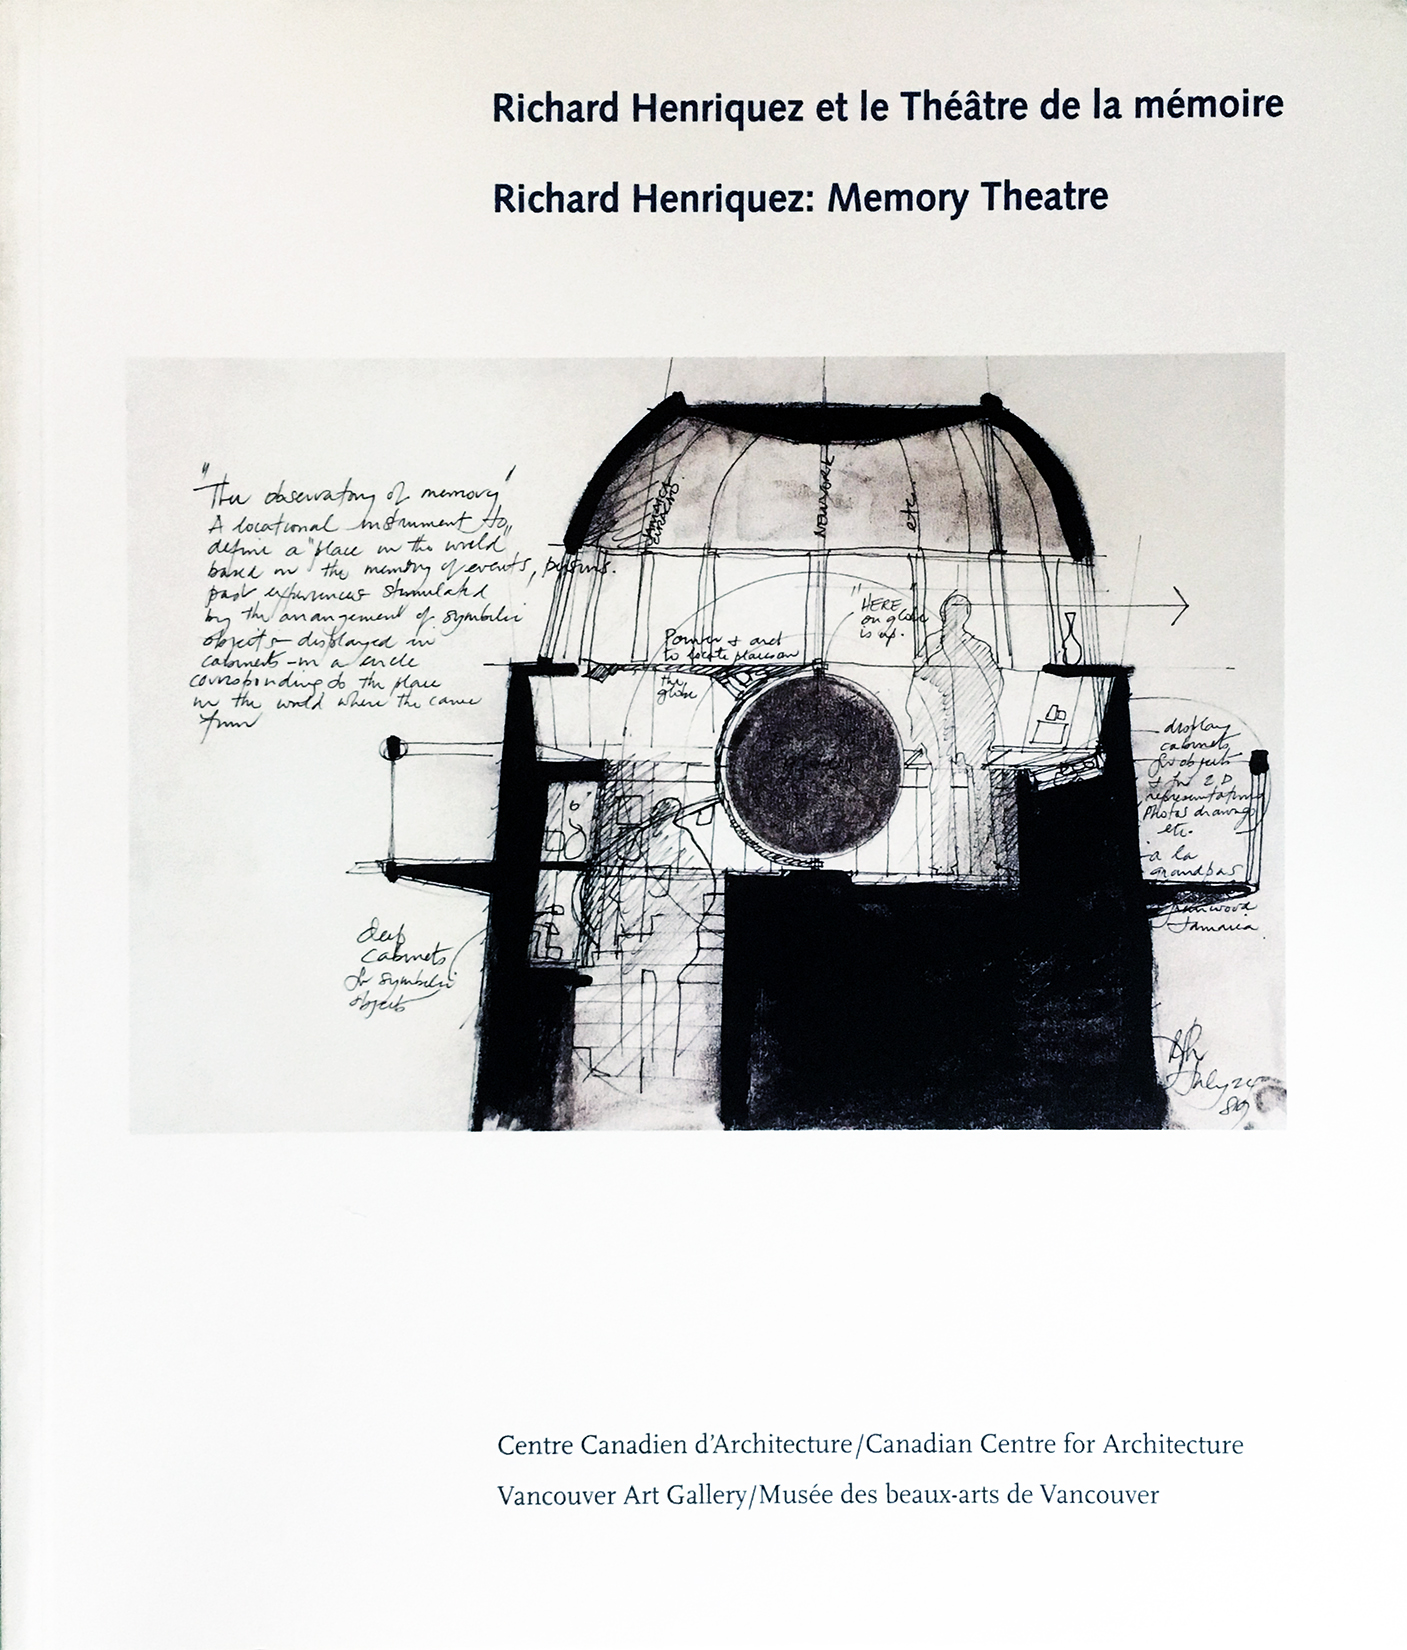 Richard Henriquez: Memory Theatre